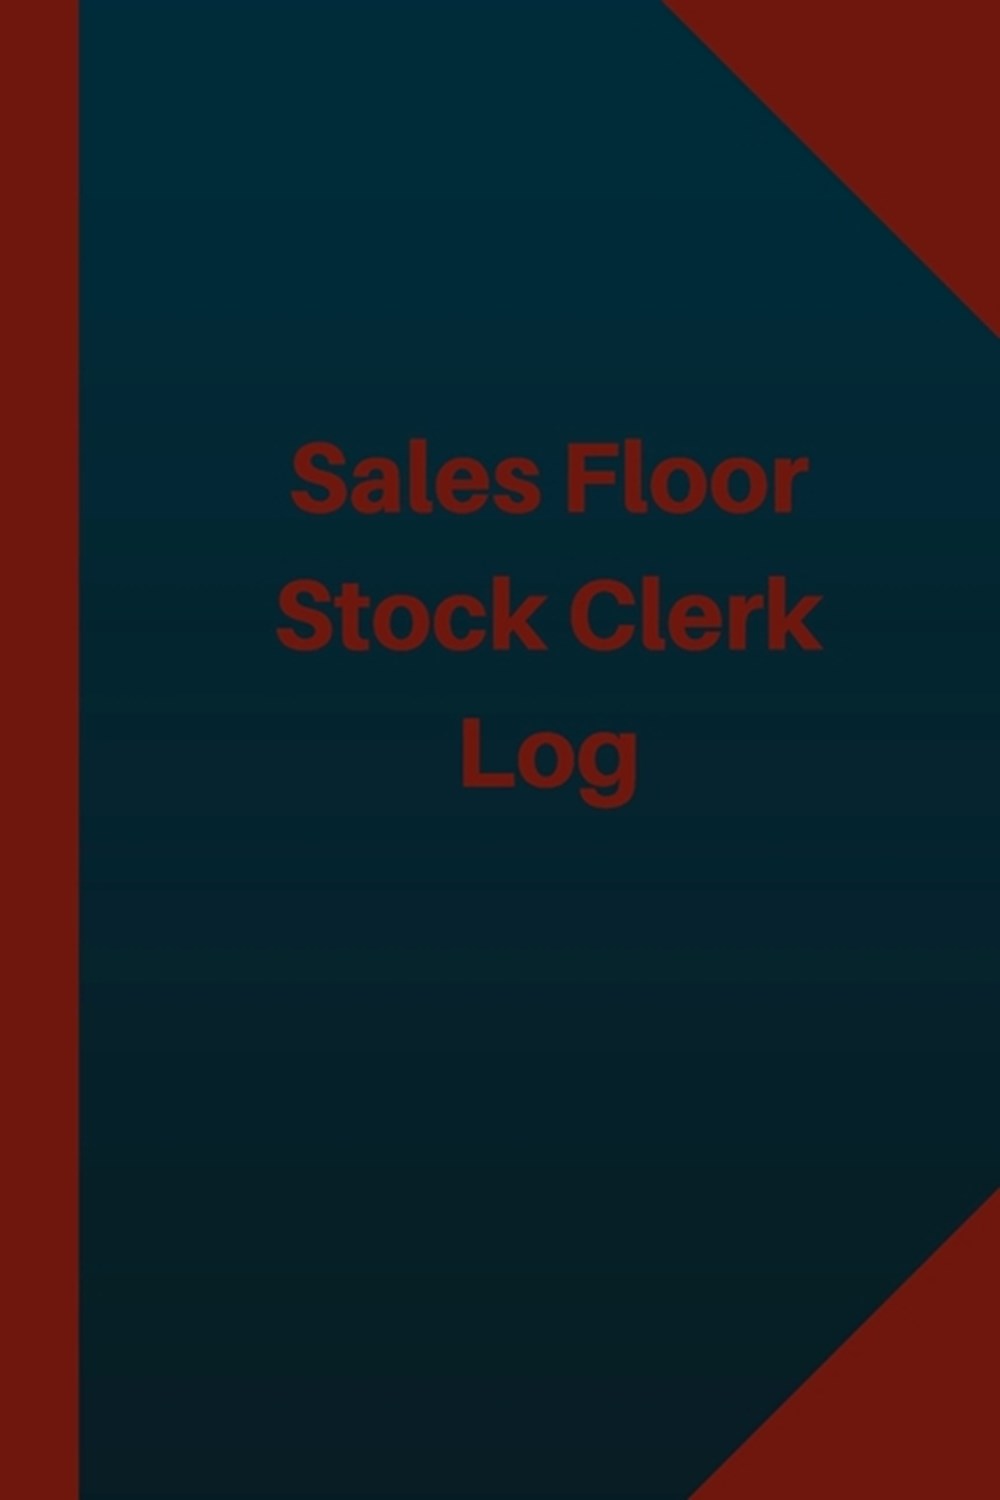 Sales Floor Stock Clerk Log (Logbook, Journal - 124 pages 6x9 inches) Sales Floor Stock Clerk Logboo